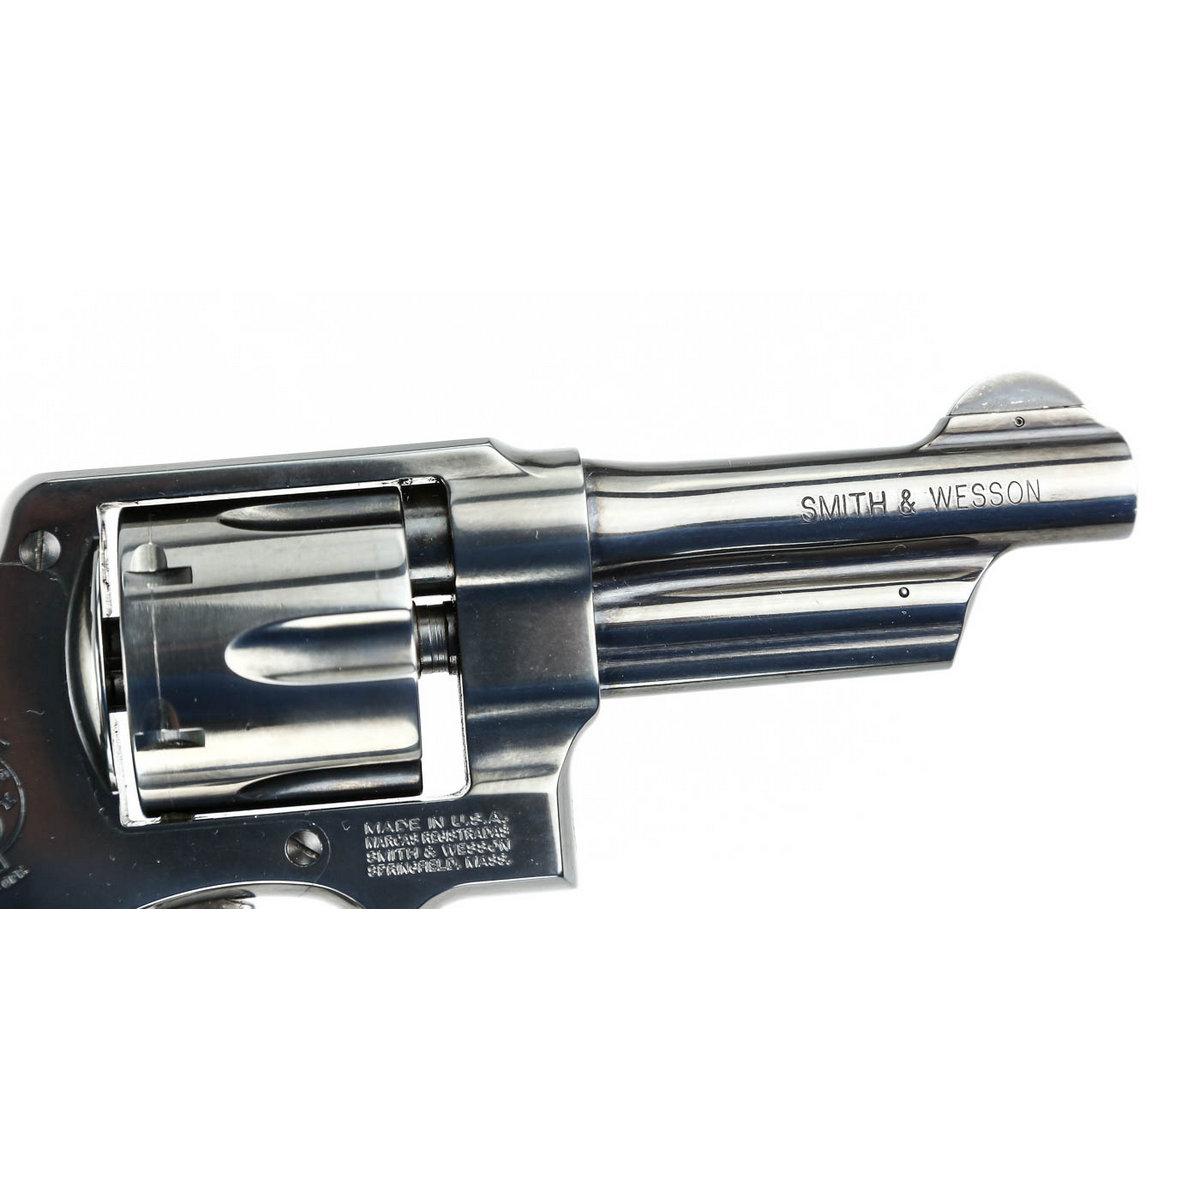 Smith & Wesson Model 22-4 .45 ACP Revolver